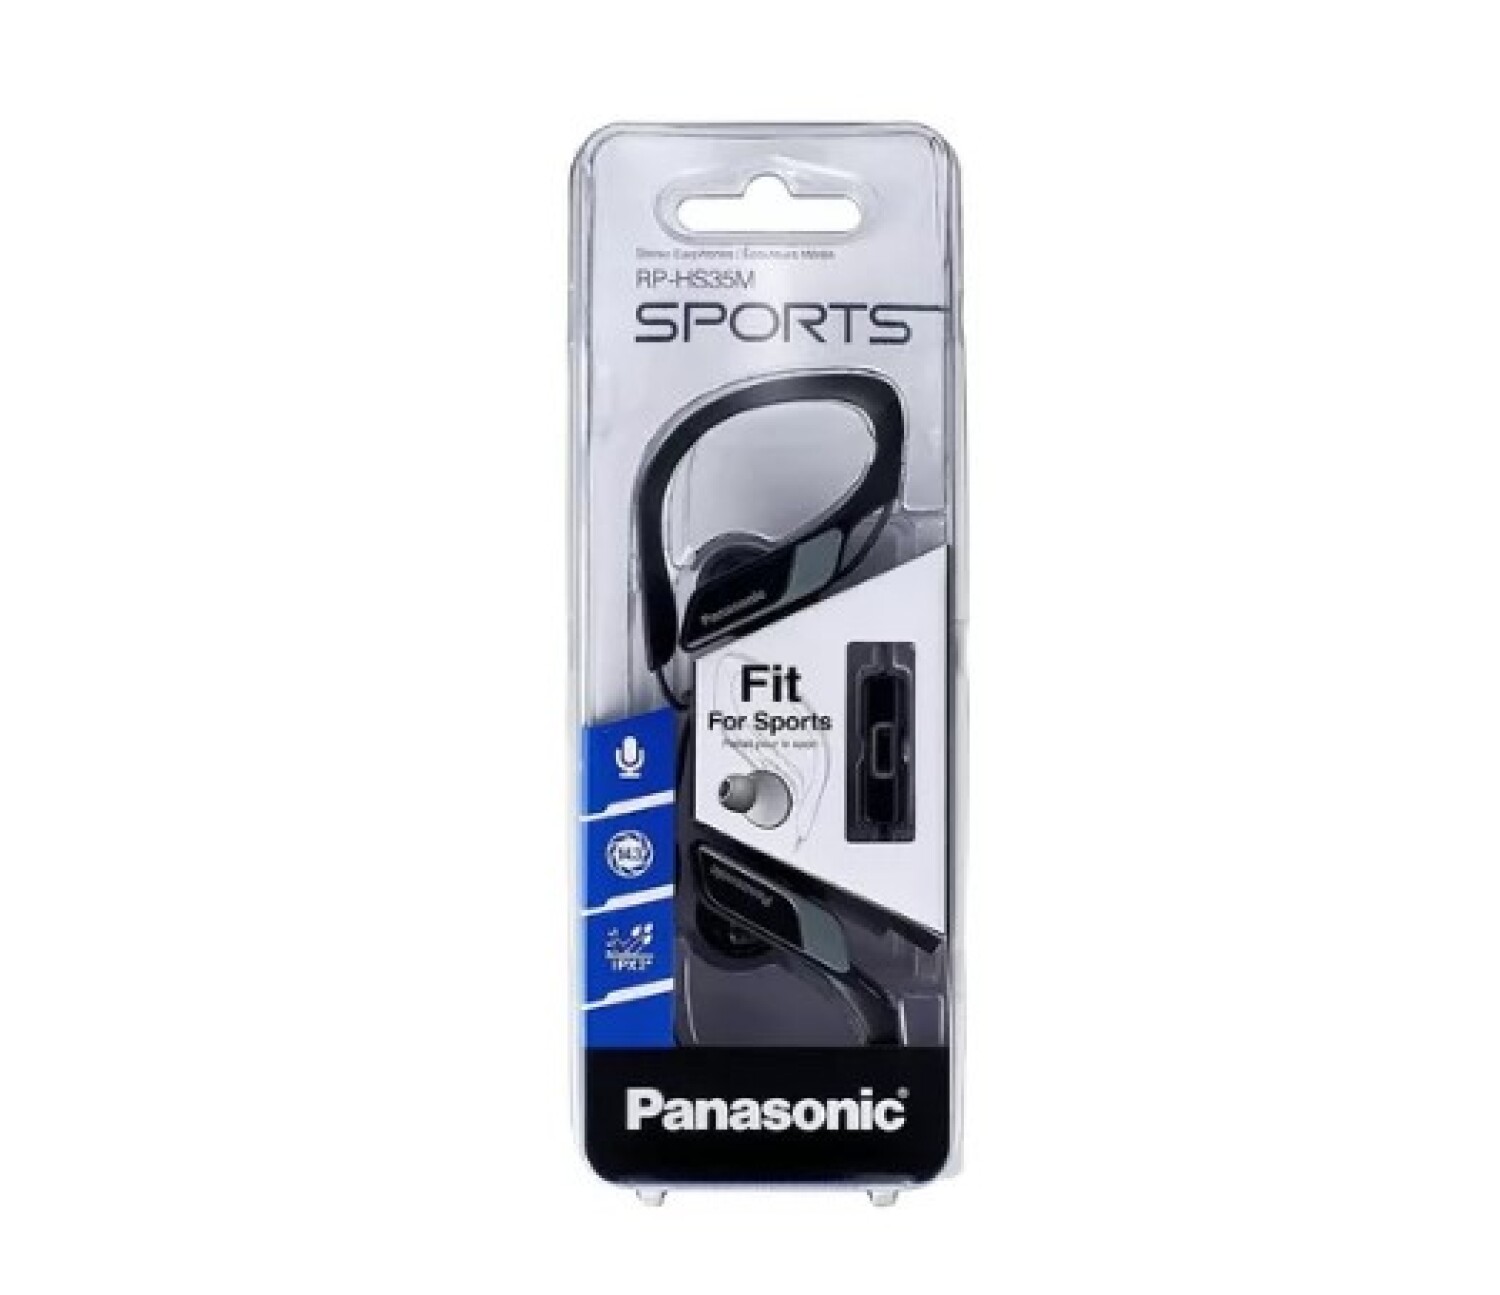 Auriculares Panasonic RP-HF100ME-E